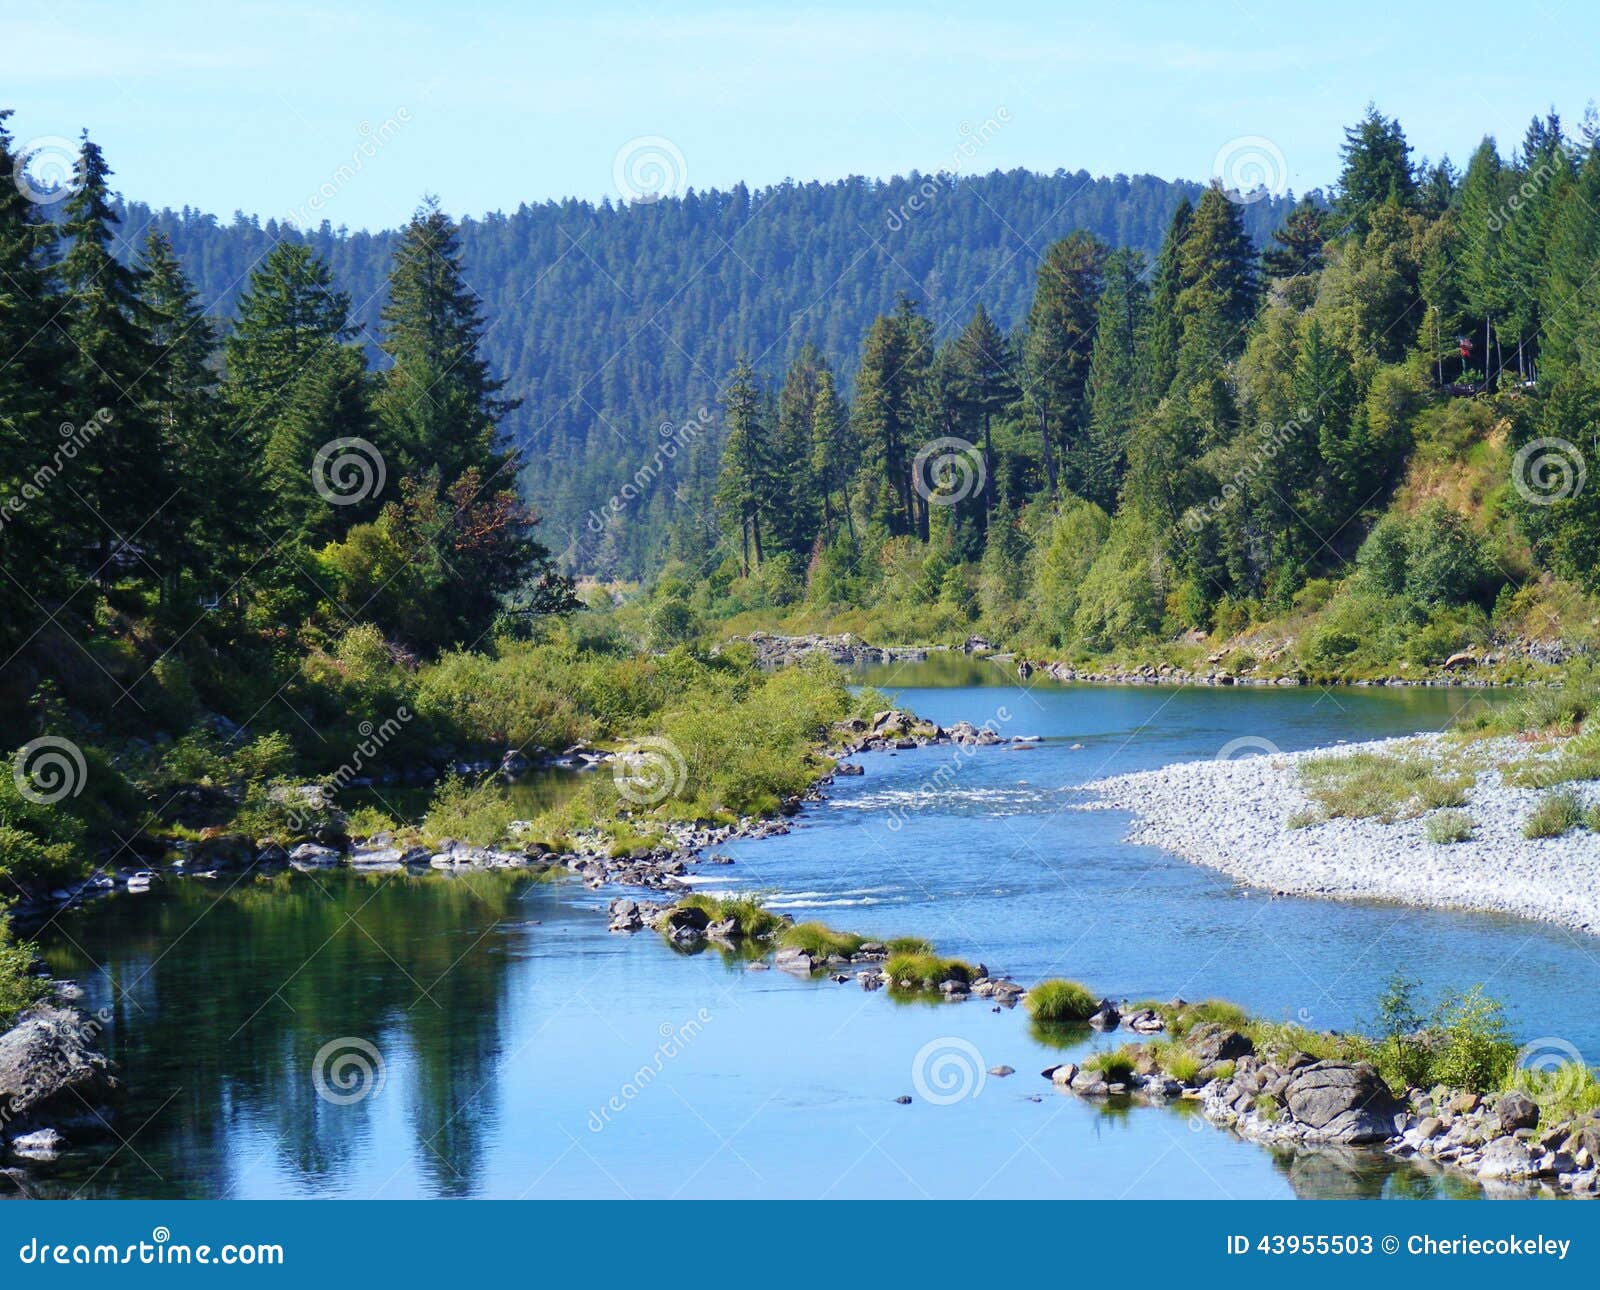 scenic blue twisting oregon river